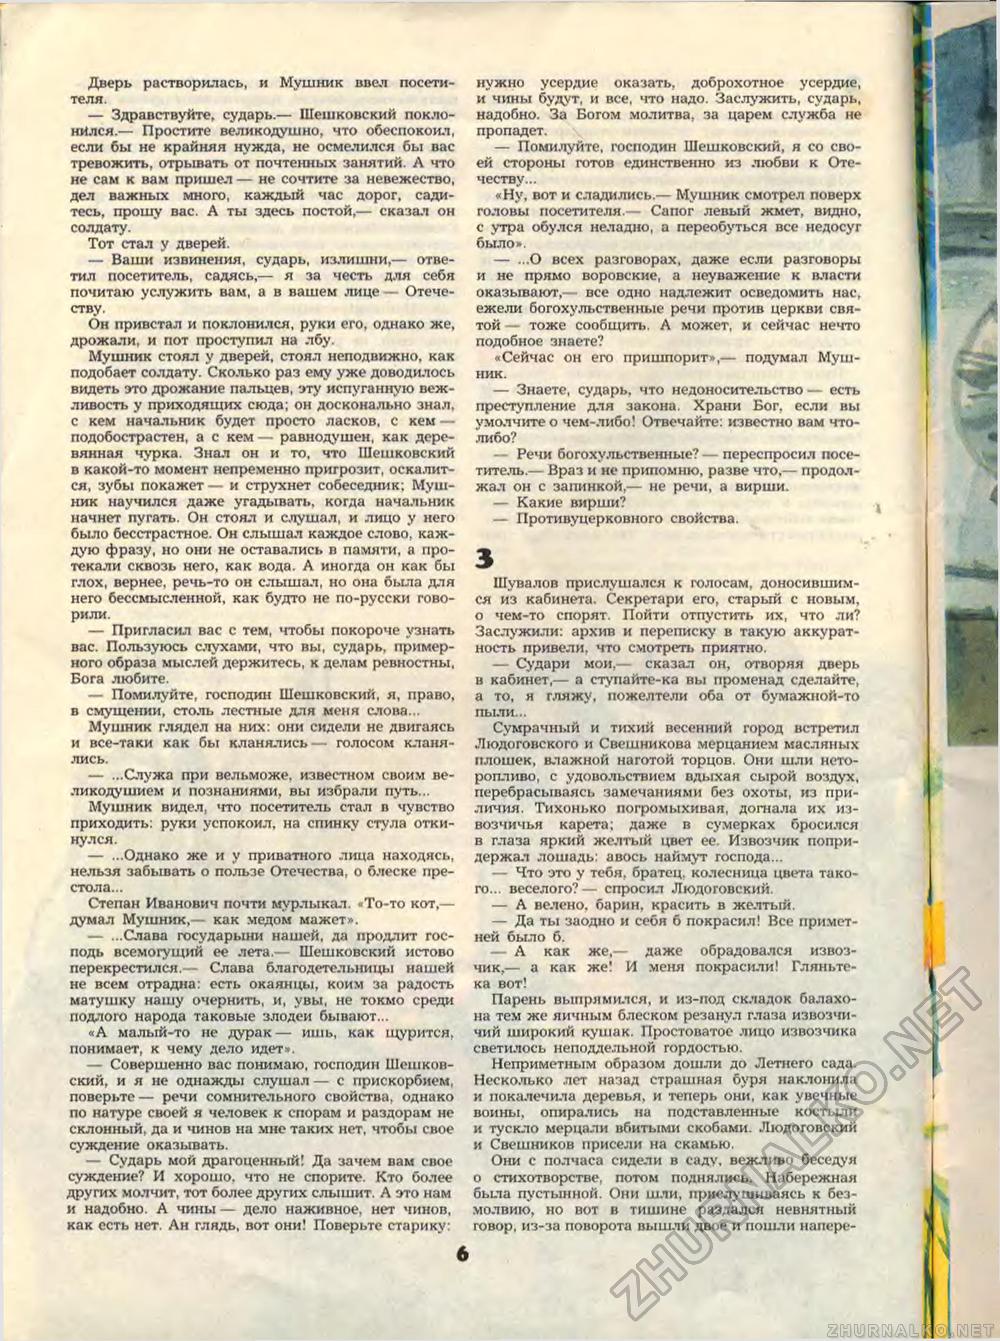  1989-07,  8